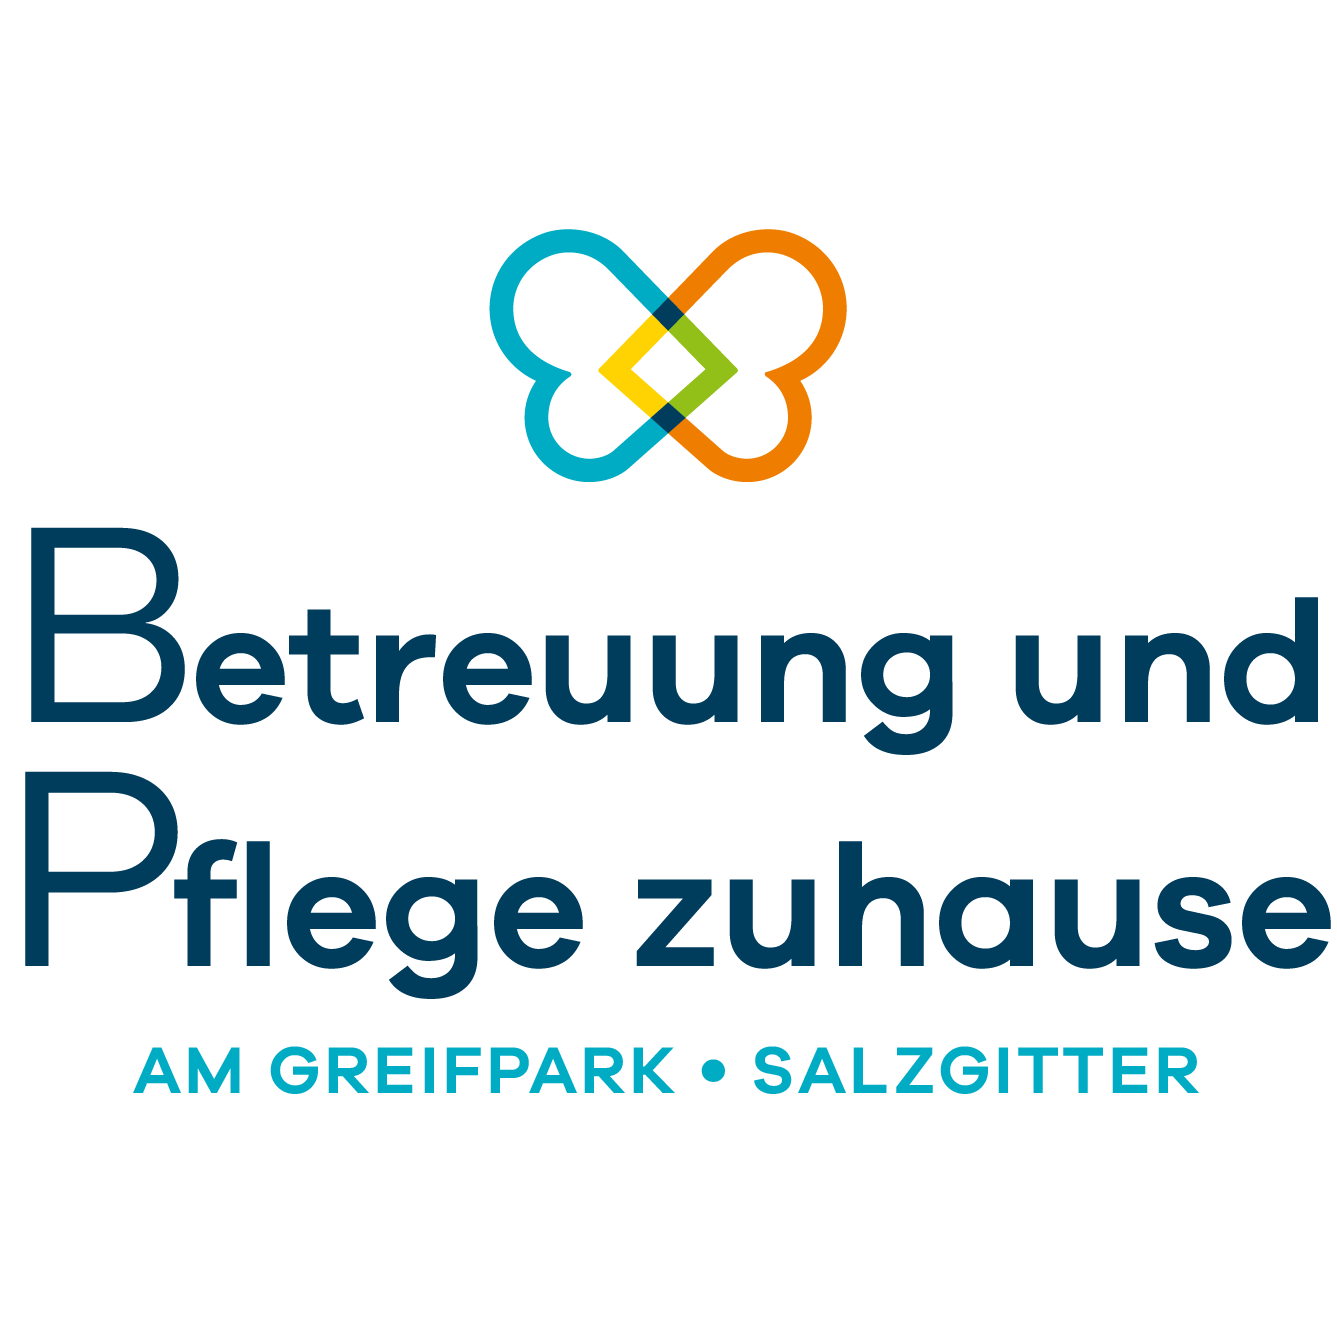 Betreuung und Pflege zuhause am Greifpark in Salzgitter - Logo